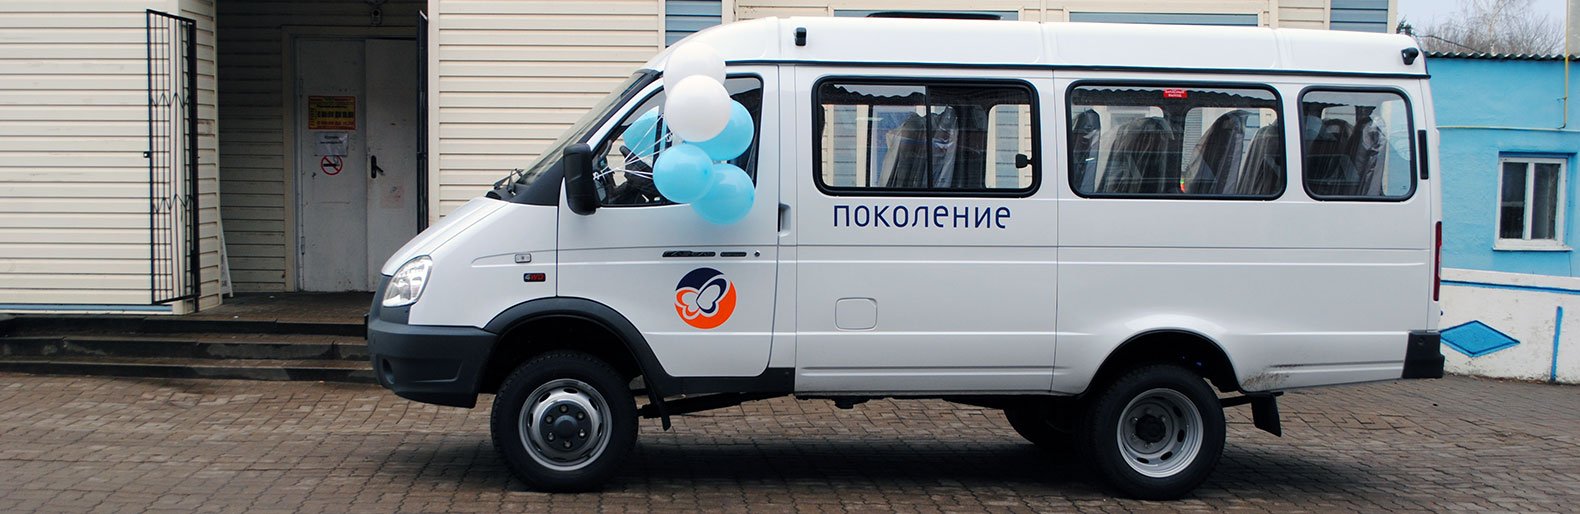 Новый автомобиль от фонда «Поколение» пополнил парк соцучреждений Чернянского района